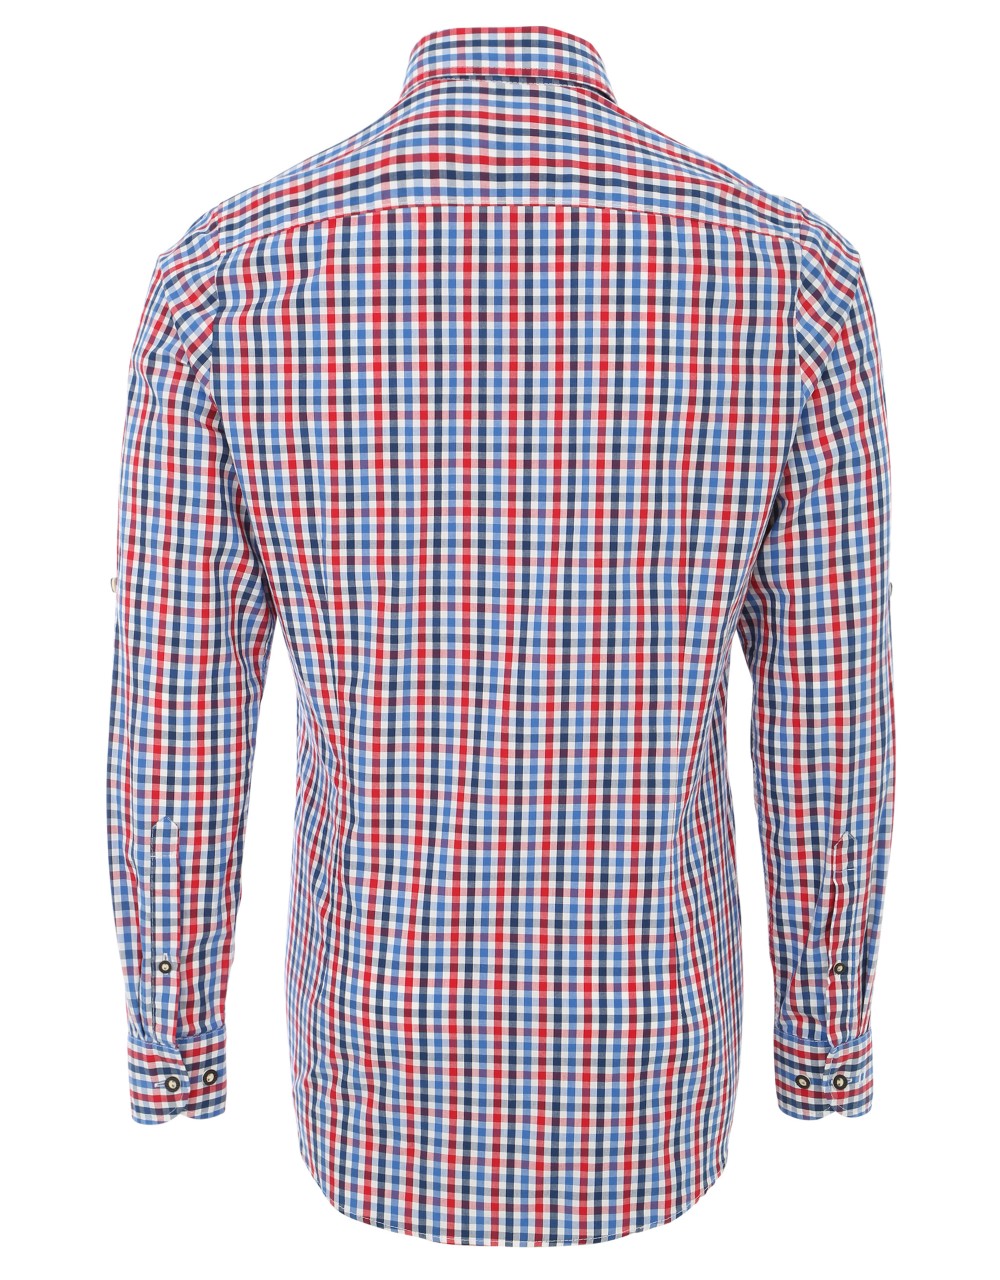 Voorvertoning: Trachten shirt Olymp blauw / rood geruit